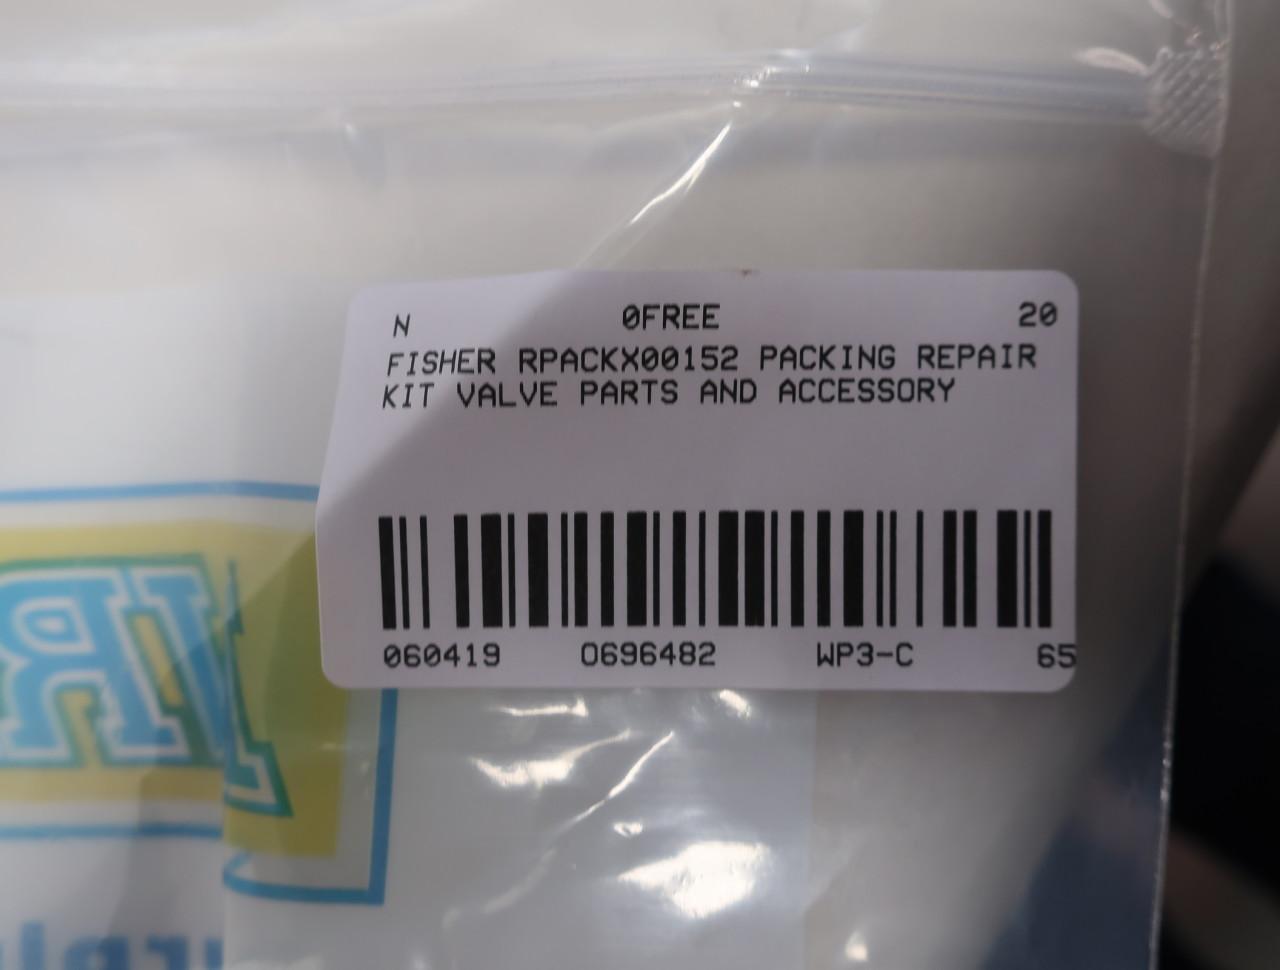 Fisher RPACKX00152 Packing Repair Kit 